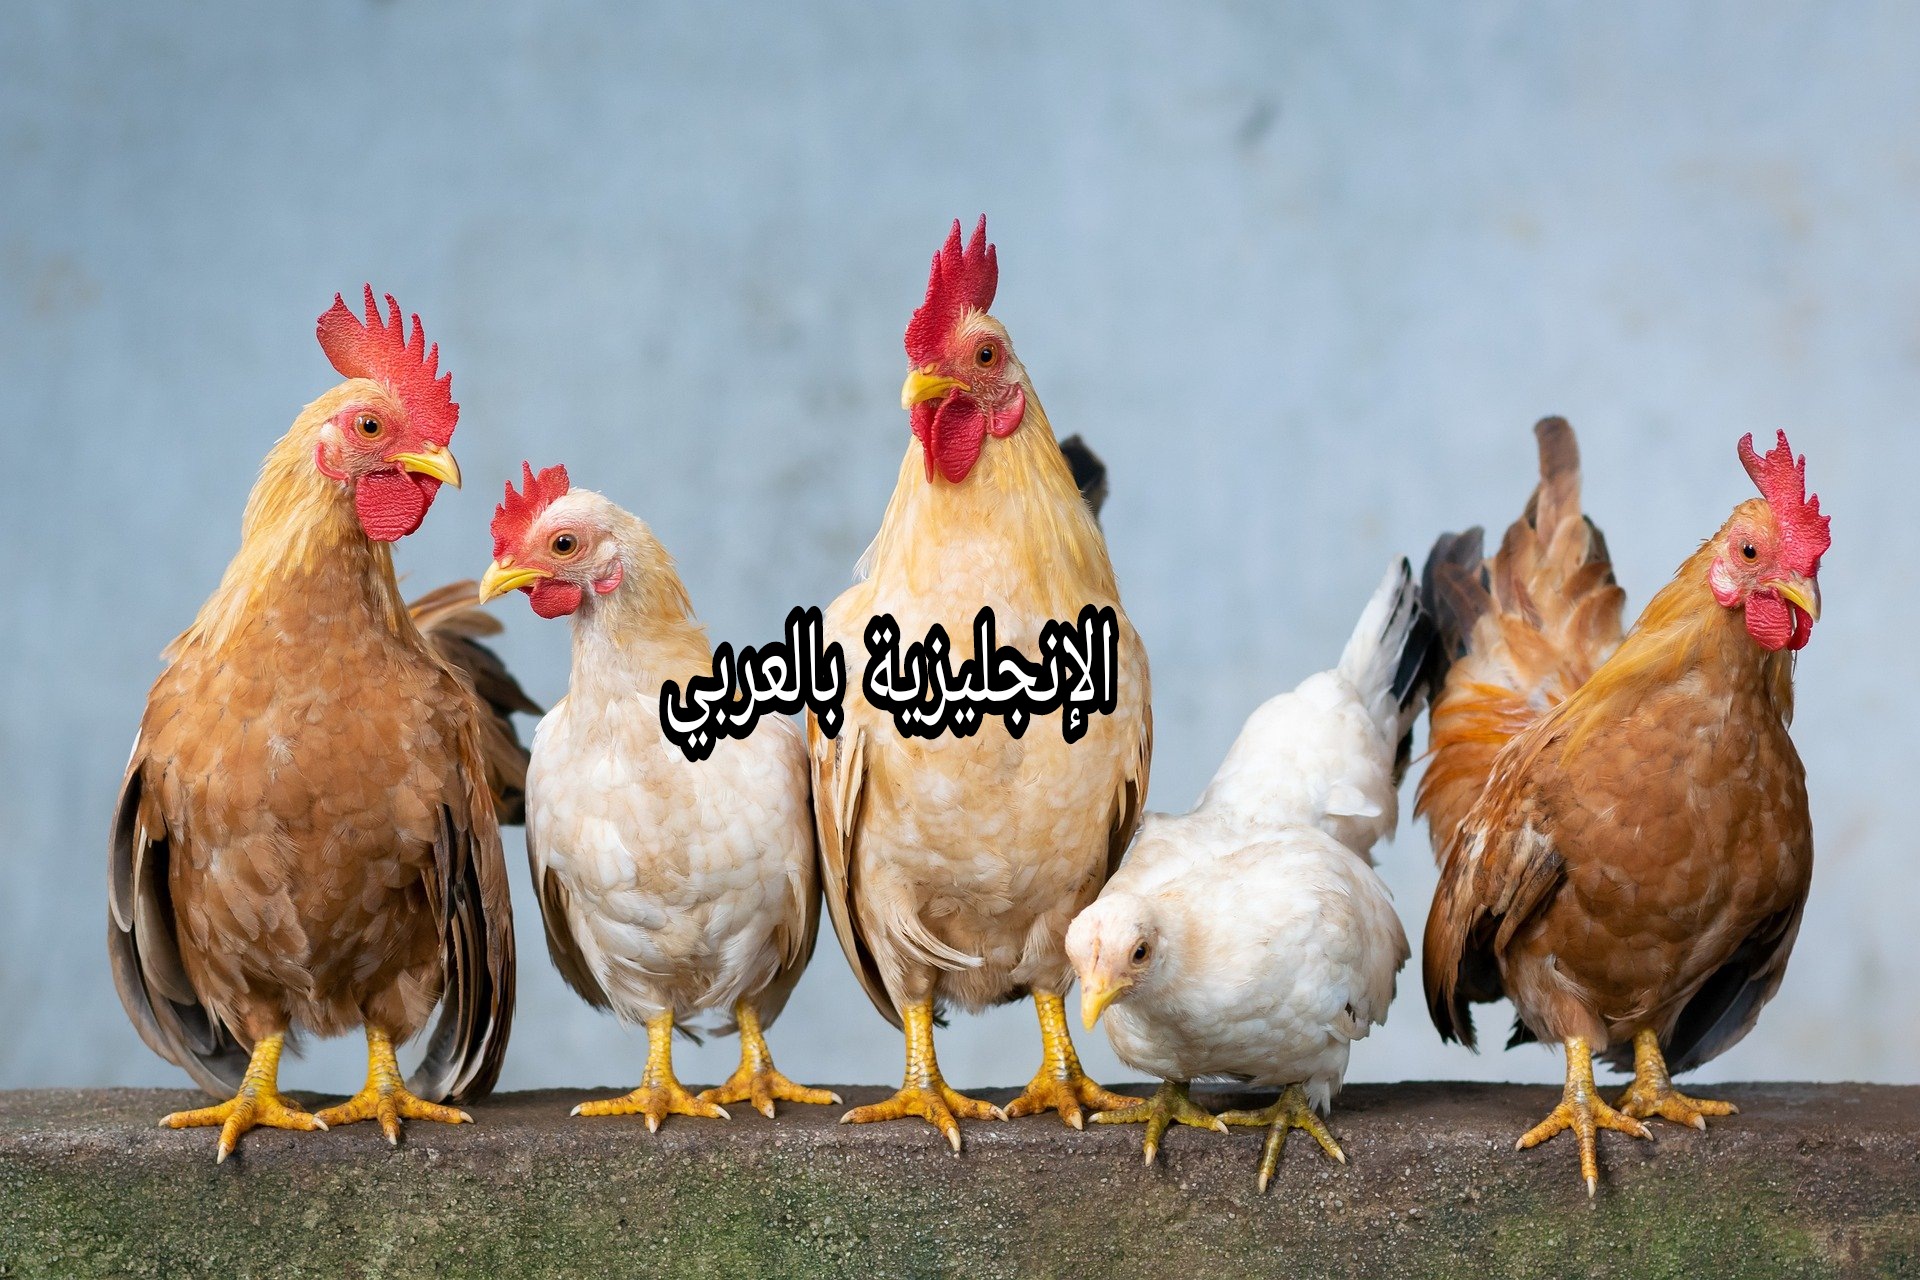 يعطى موعد مهم رصاصة  برجراف أو تعبير عن الدجاجة بالإنجليزي والعربي - الإنجليزية بالعربي